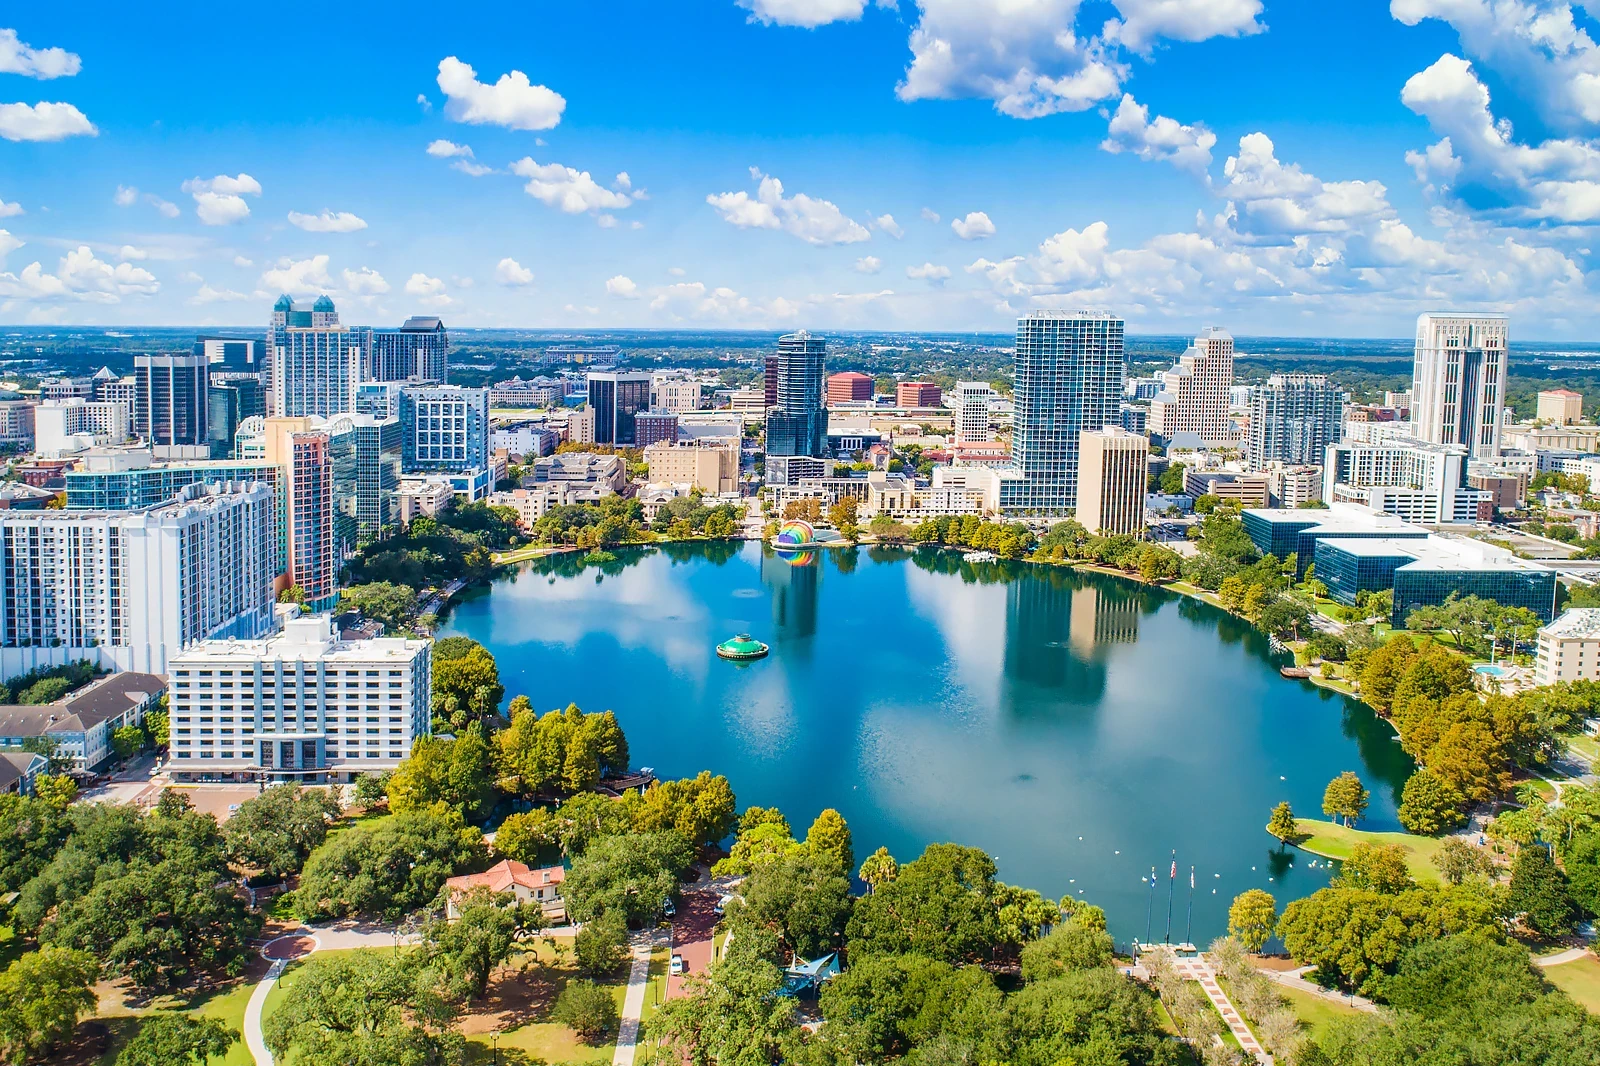 Orlando to host US Olympic Marathon Trials for Paris 2024